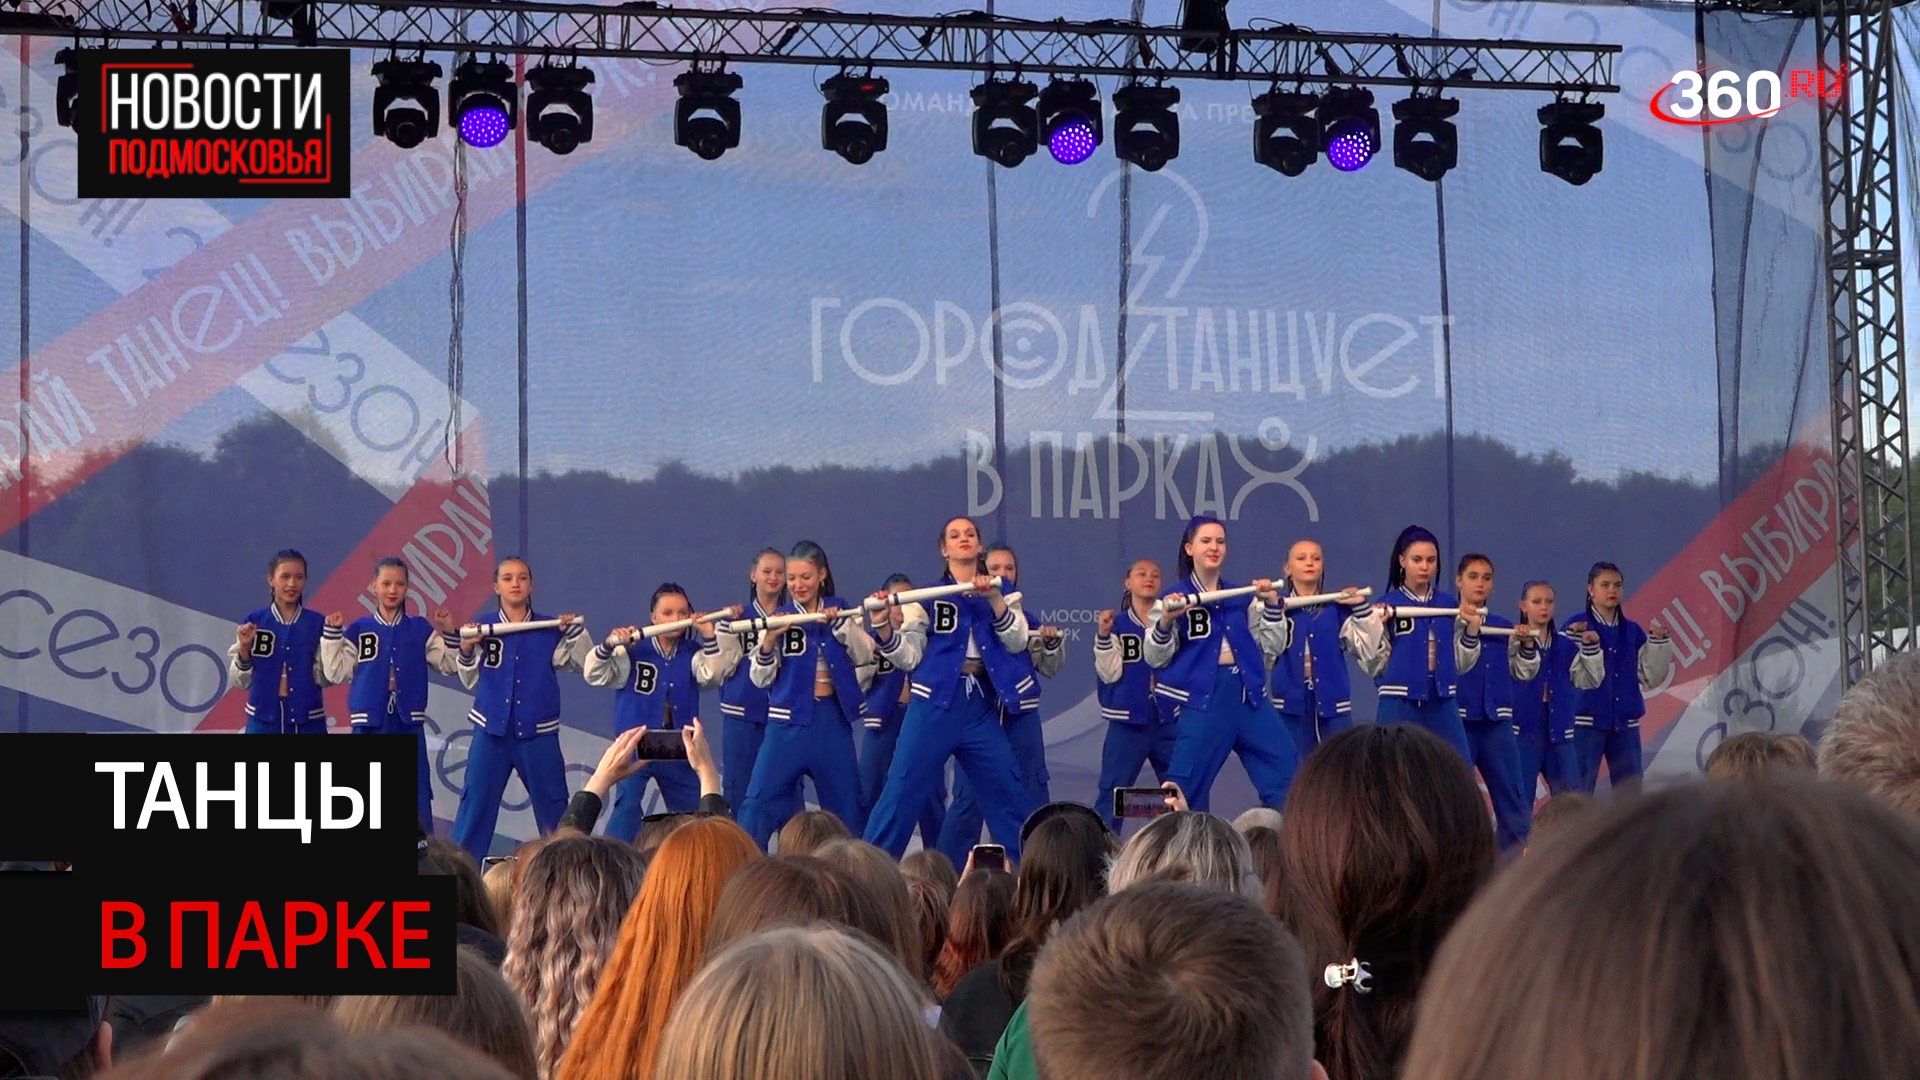 Последний этап фестиваля "Город танцует в парках" завершился в Солнечногорске